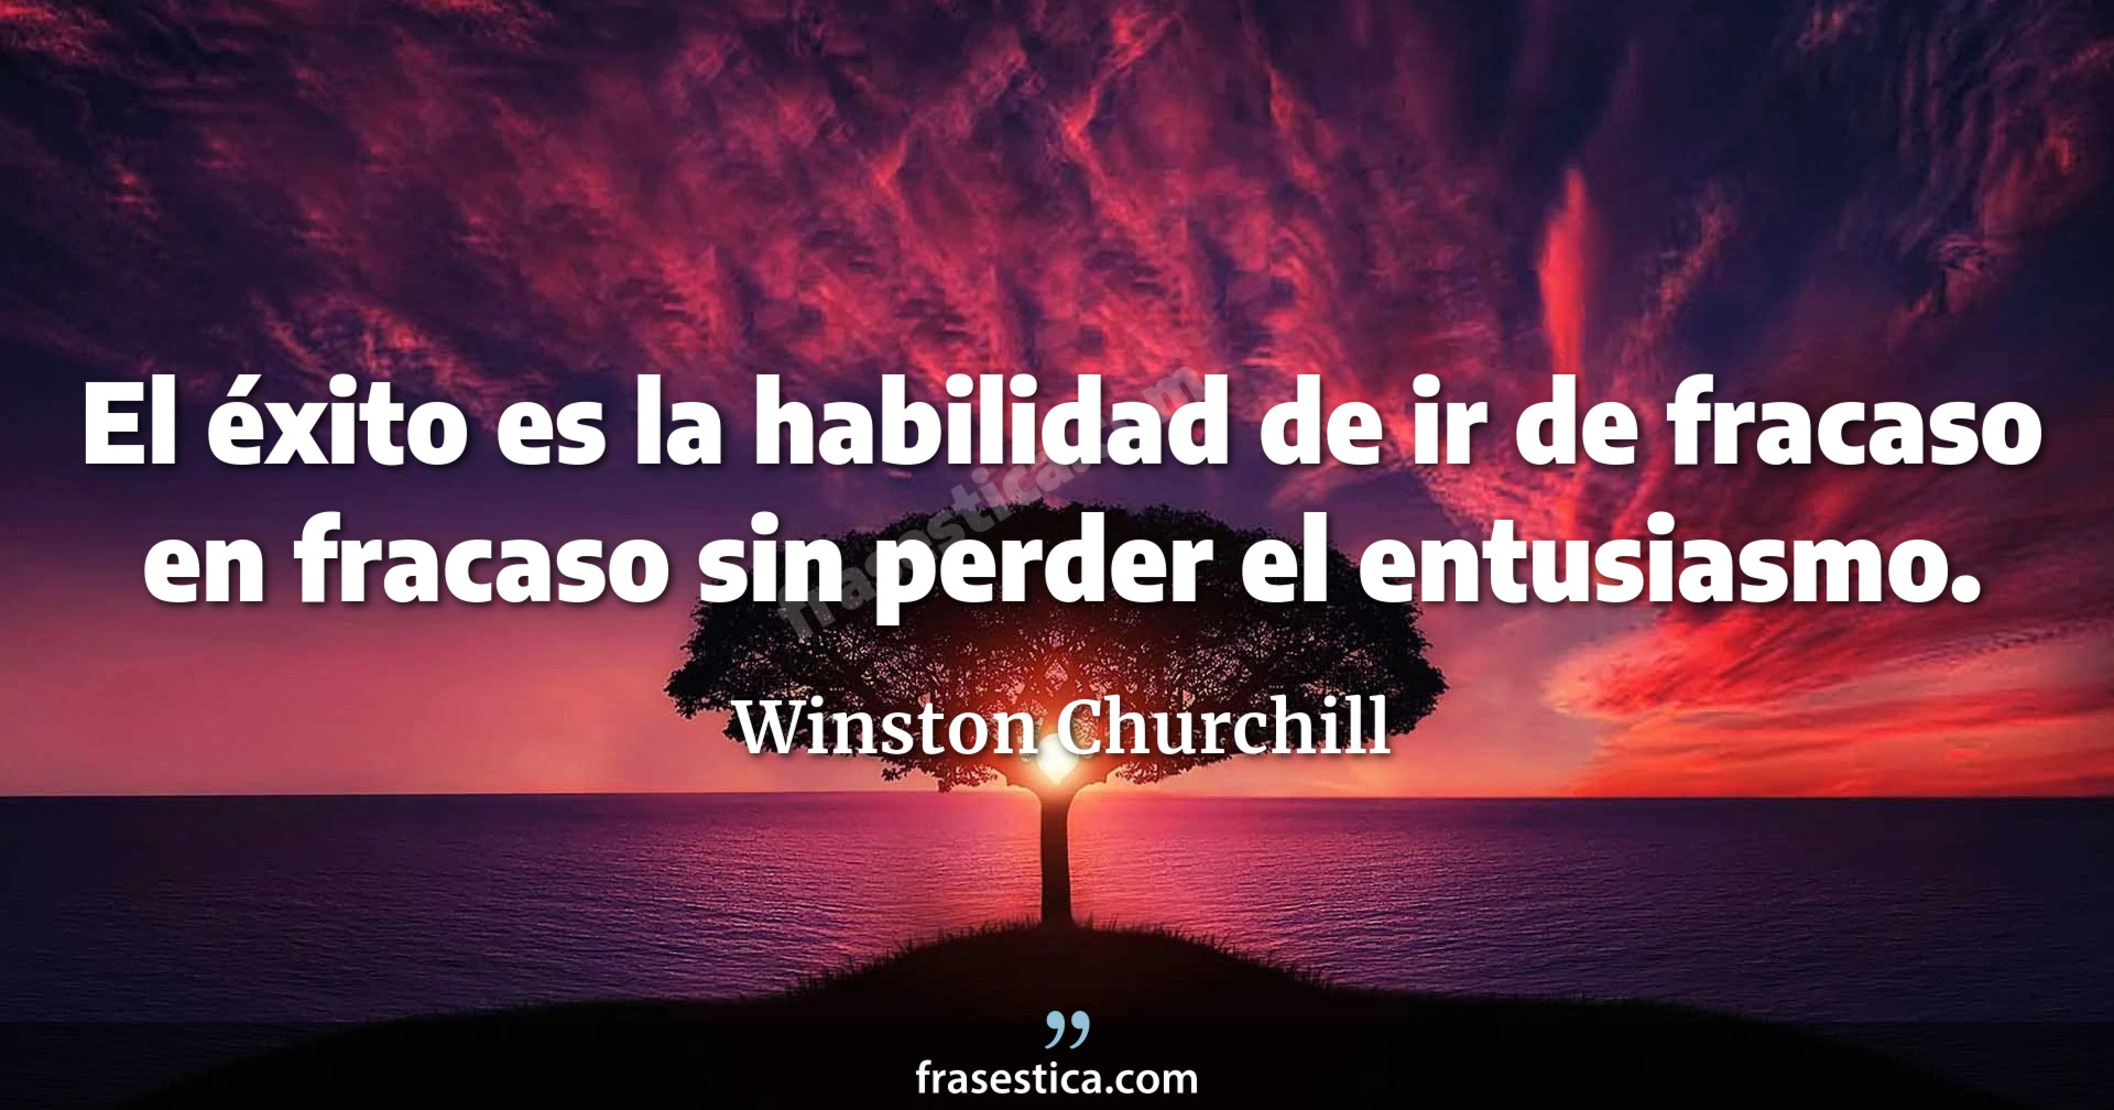 El éxito es la habilidad de ir de fracaso en fracaso sin perder el entusiasmo. - Winston Churchill